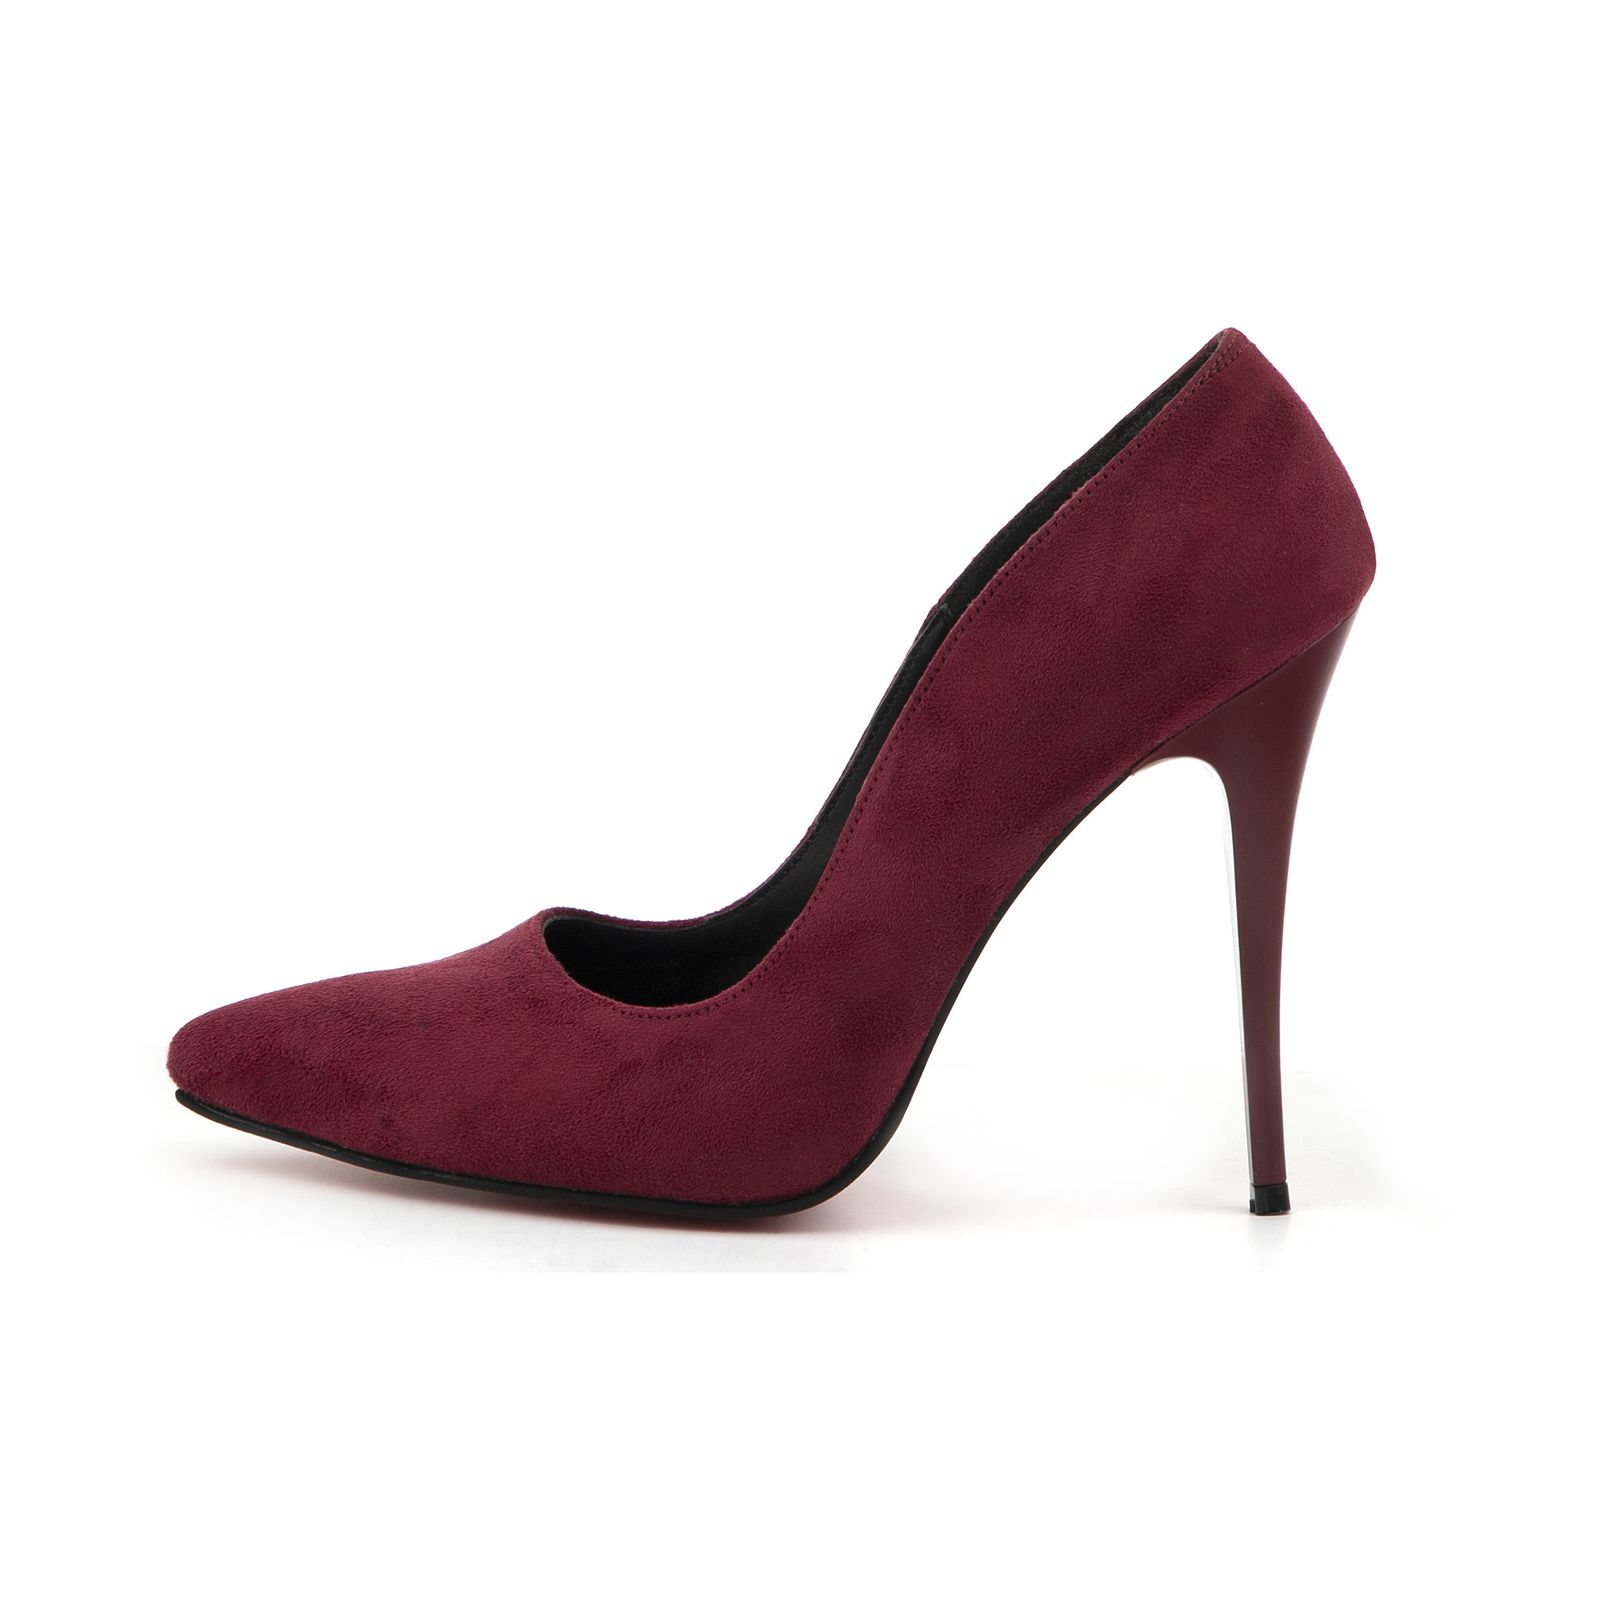 کفش زنانه پاریس هیلتون مدل psw21510 رنگ زرشکی -  - 1